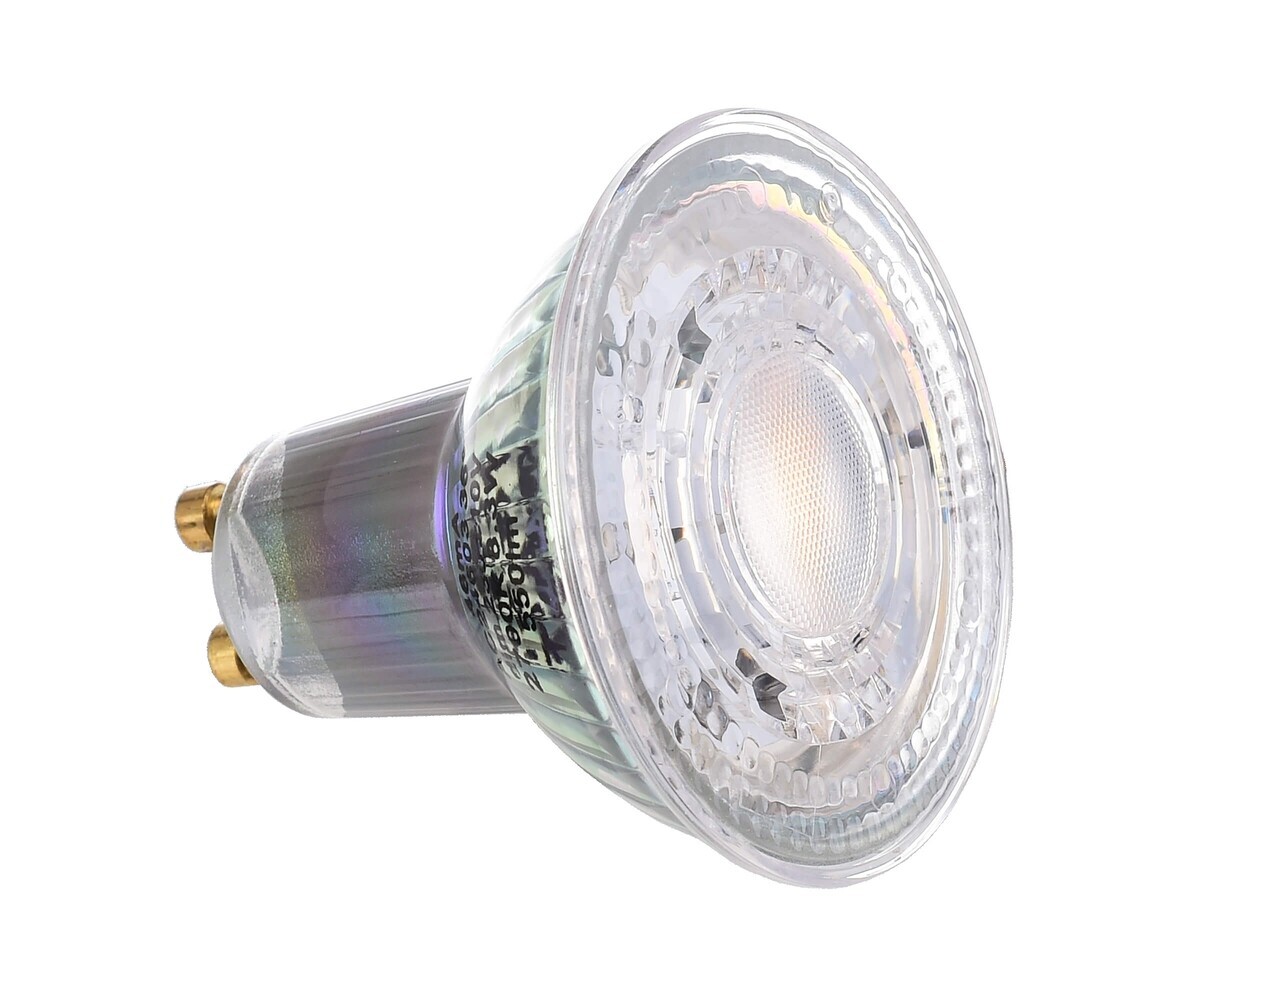 Ein hochwertiges, energieeffizientes Osram-Leuchtmittel, das ein warmes, angenehmes Licht erzeugt